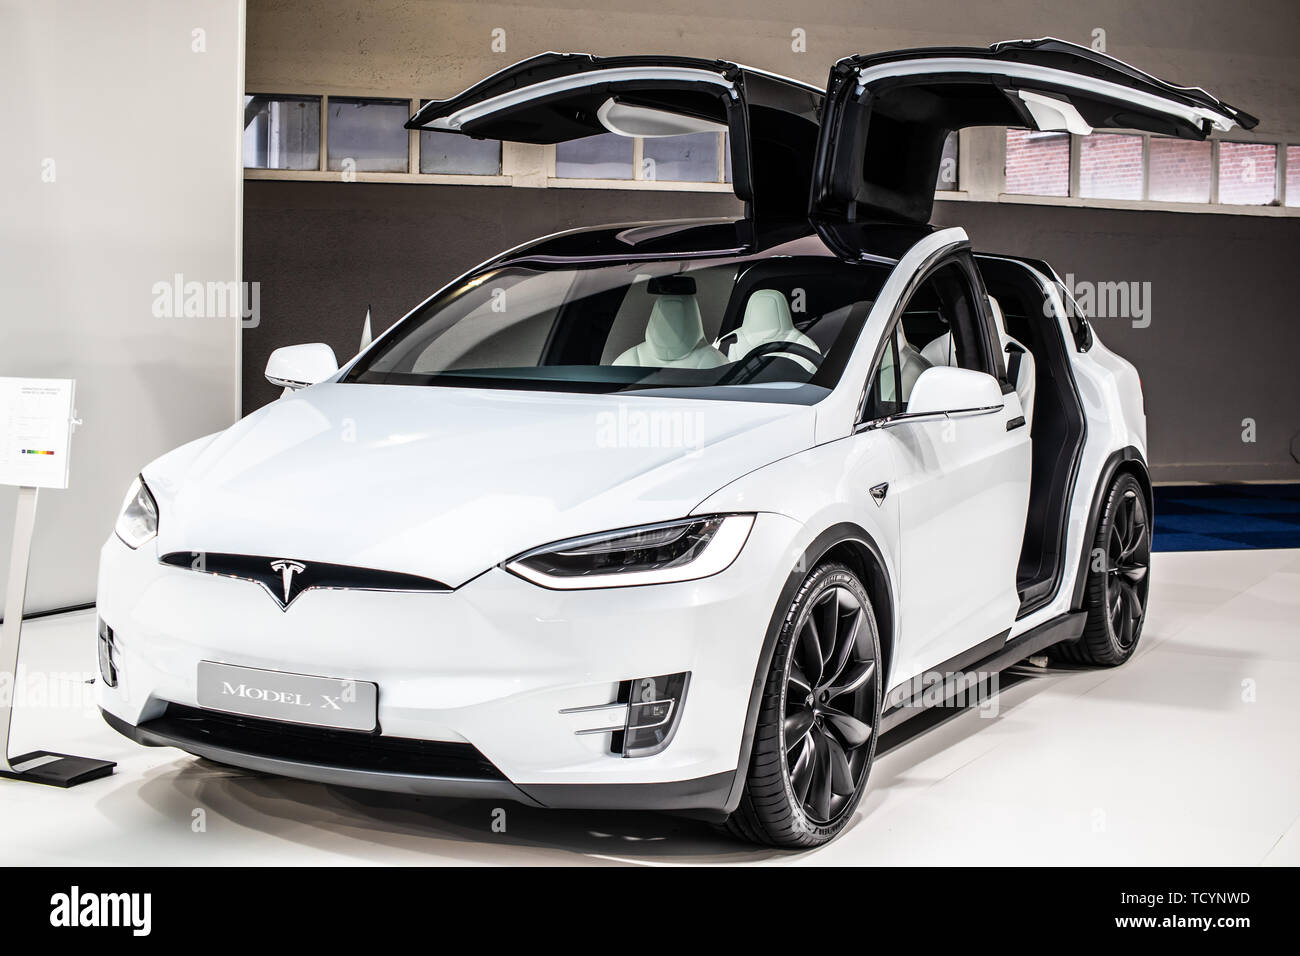 Bruxelles, Belgique, Jan 22, 2019 : white Tesla Model X à Bruxelles Salon de l'automobile, produit par le constructeur automobile américain Tesla, Elon Musk actionnaire principal Banque D'Images